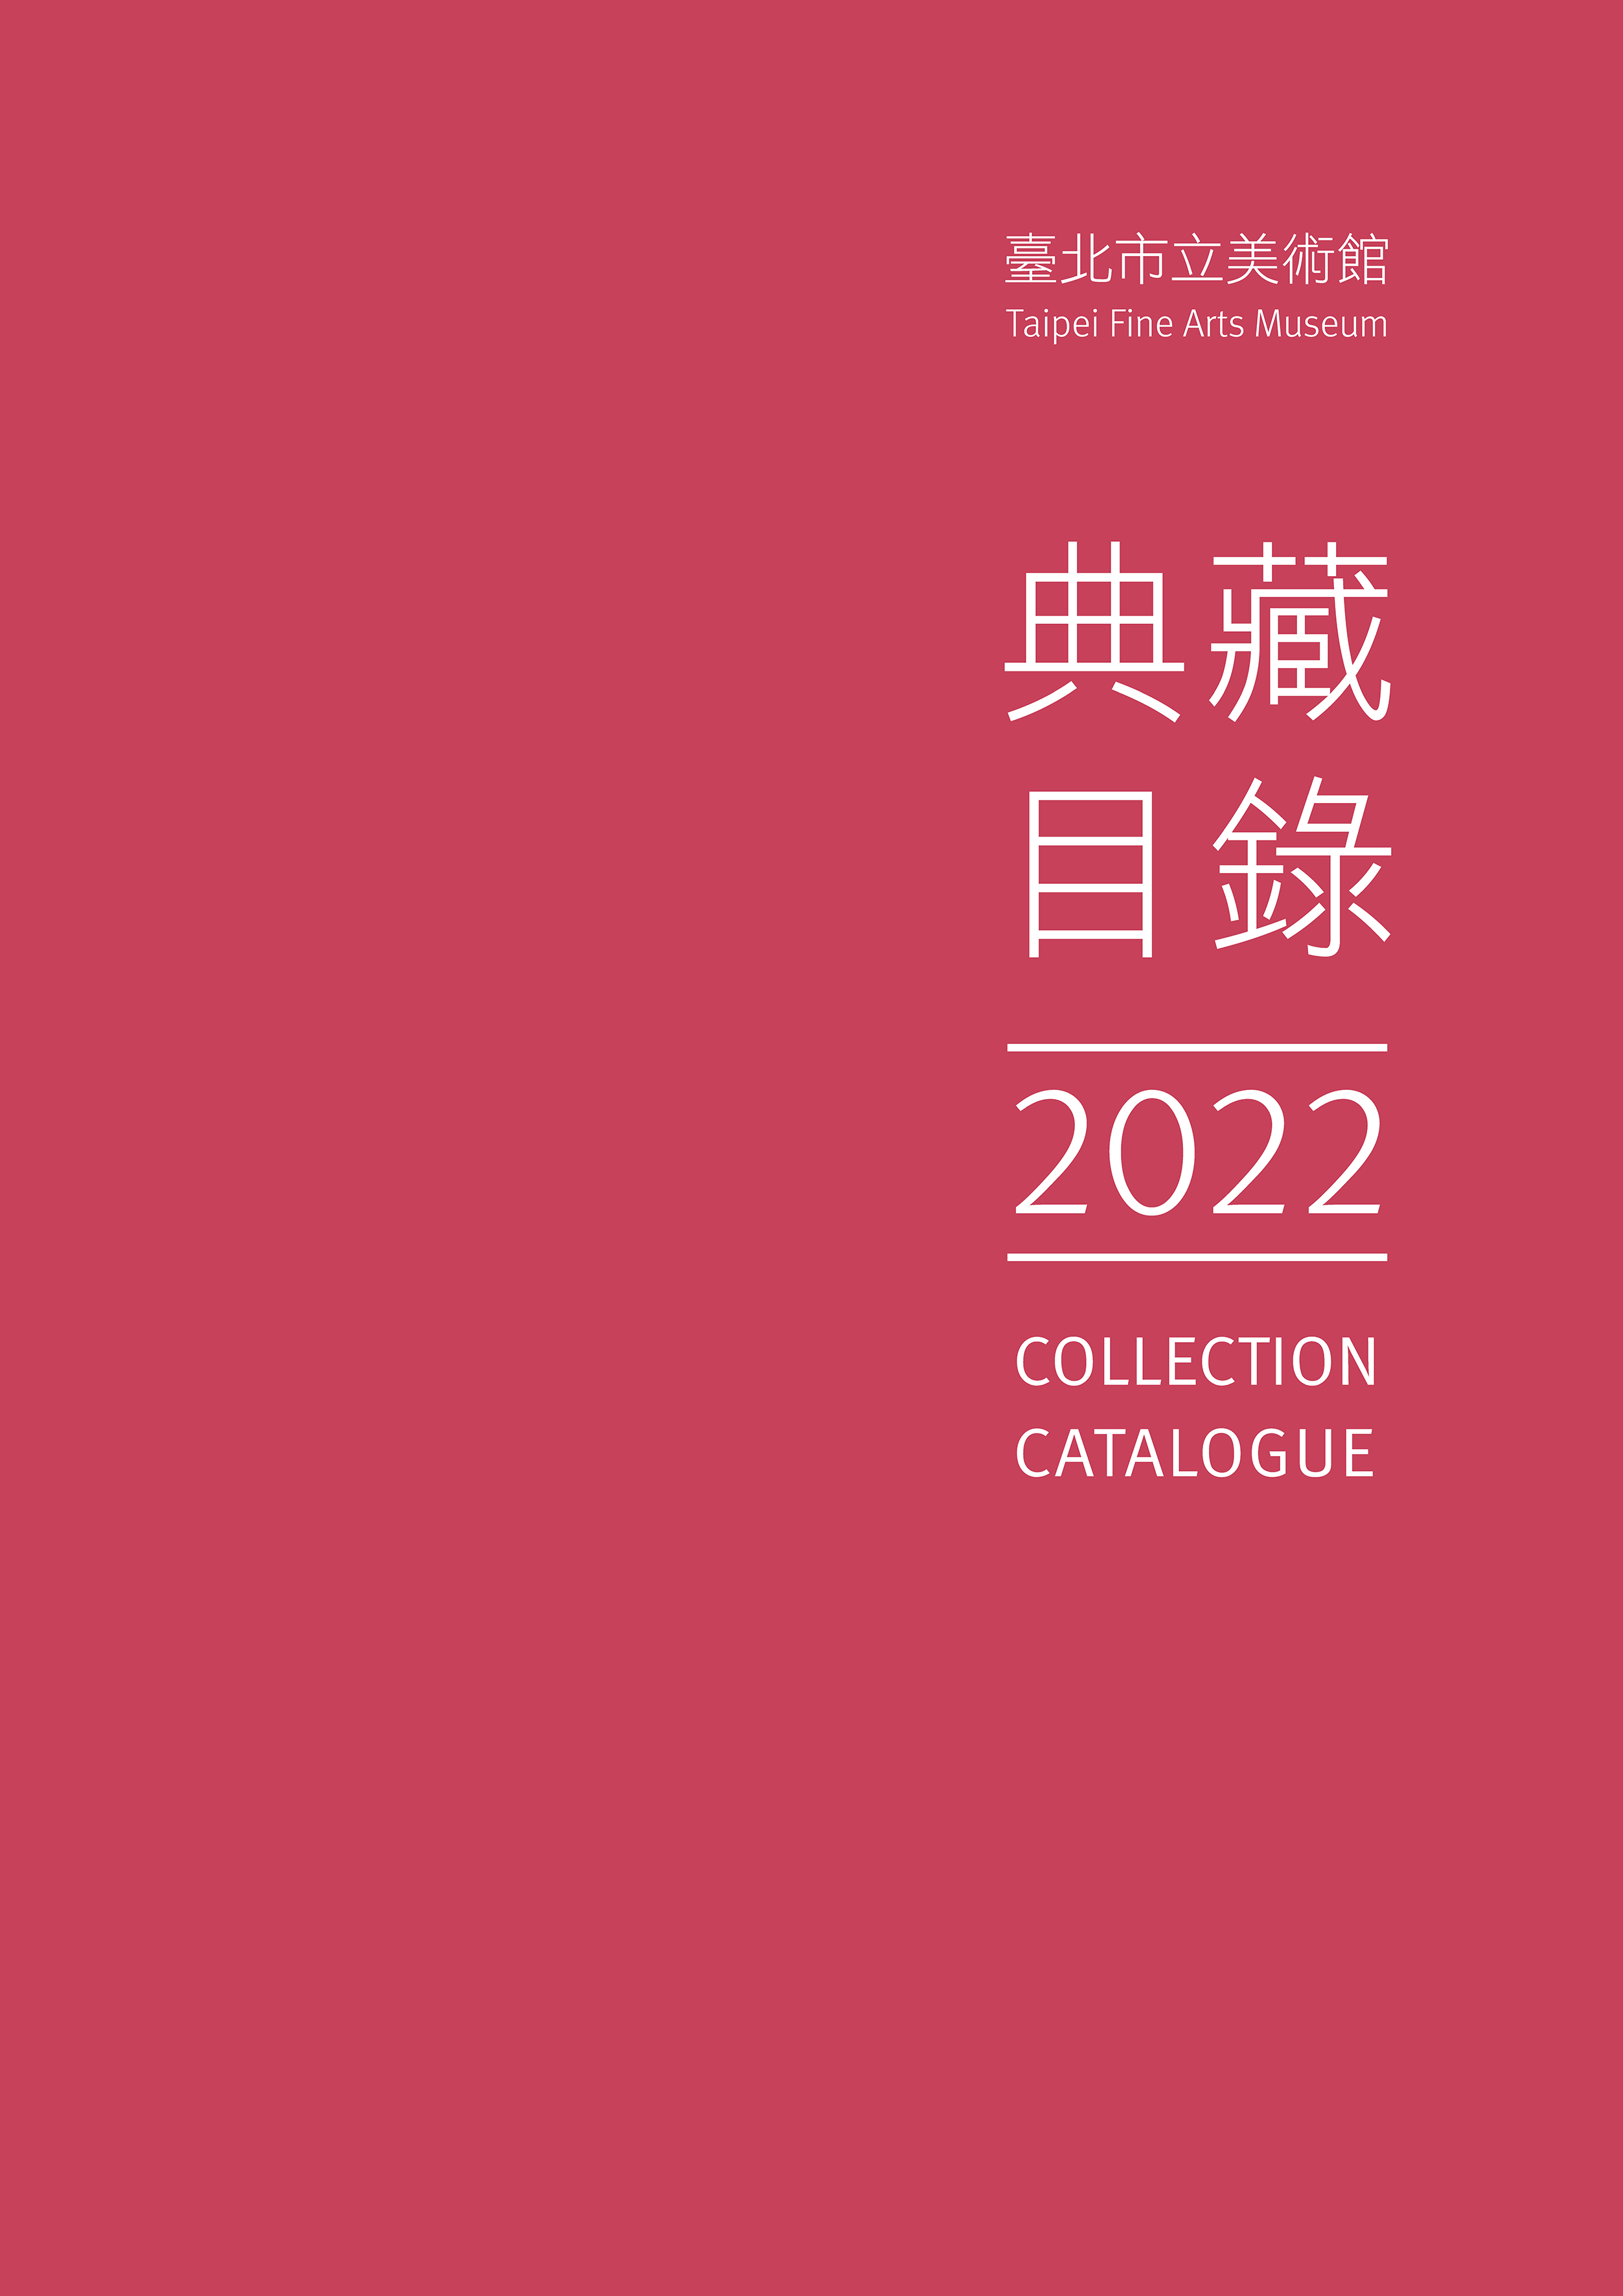 臺北市立美術館典藏目錄111(2022) 的圖說